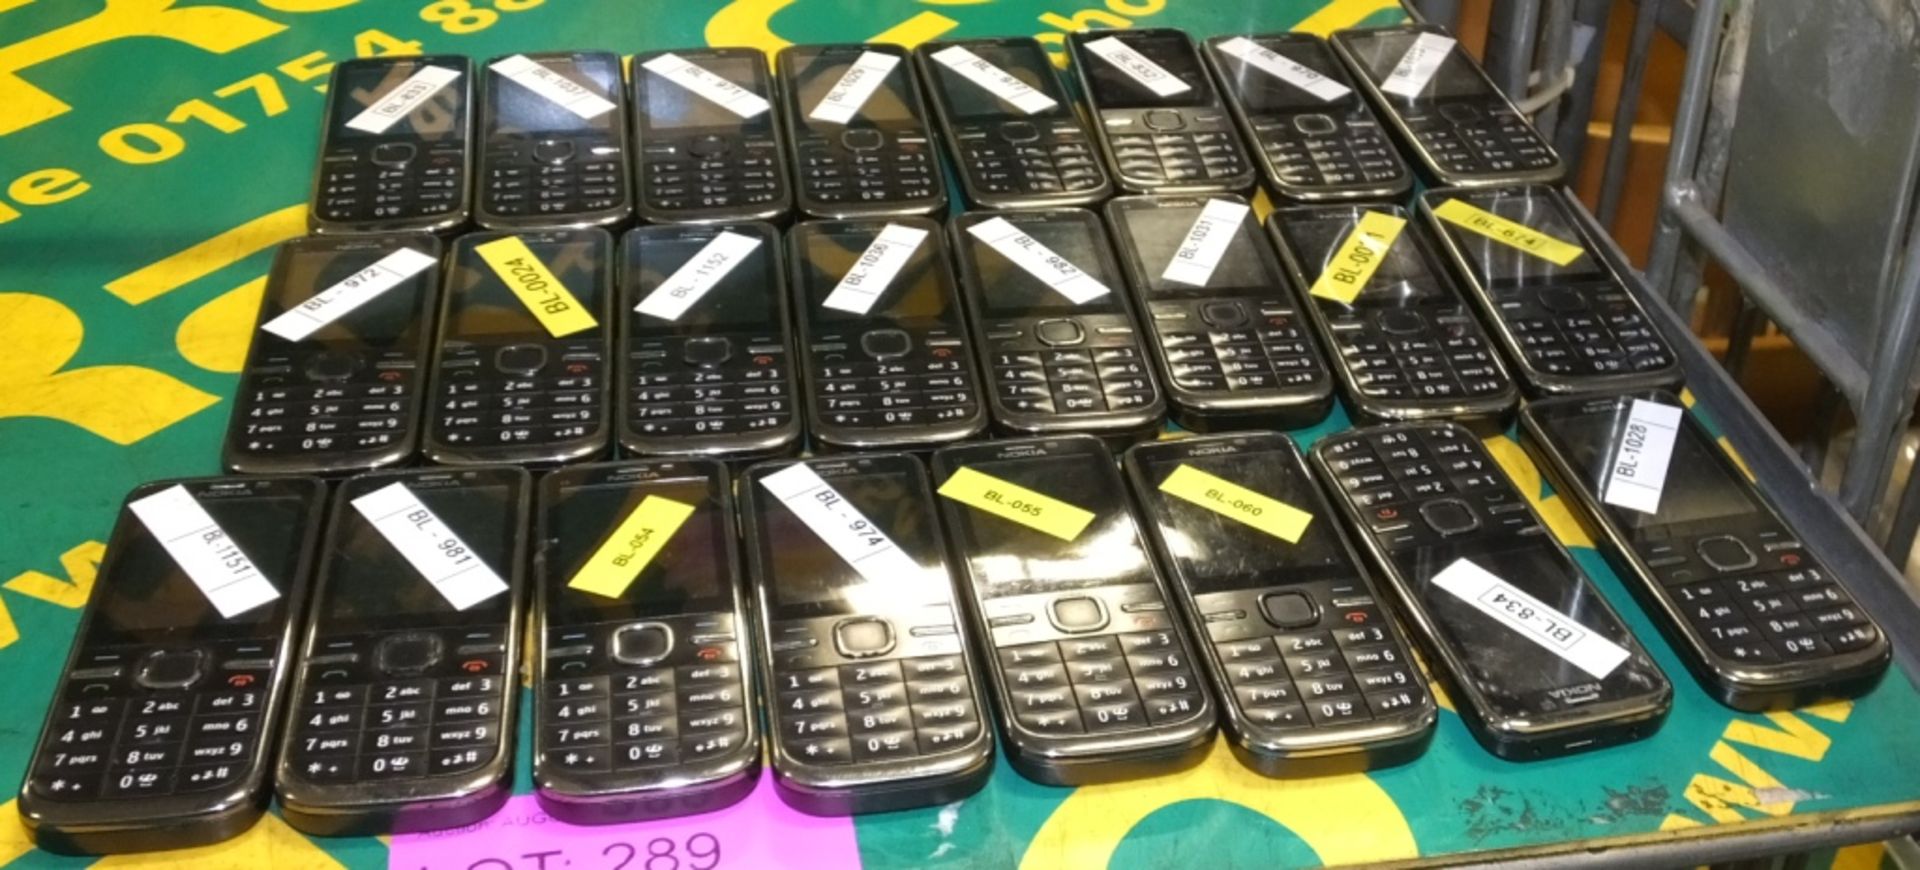 24x Nokia C5-00.2 Mobile Phones